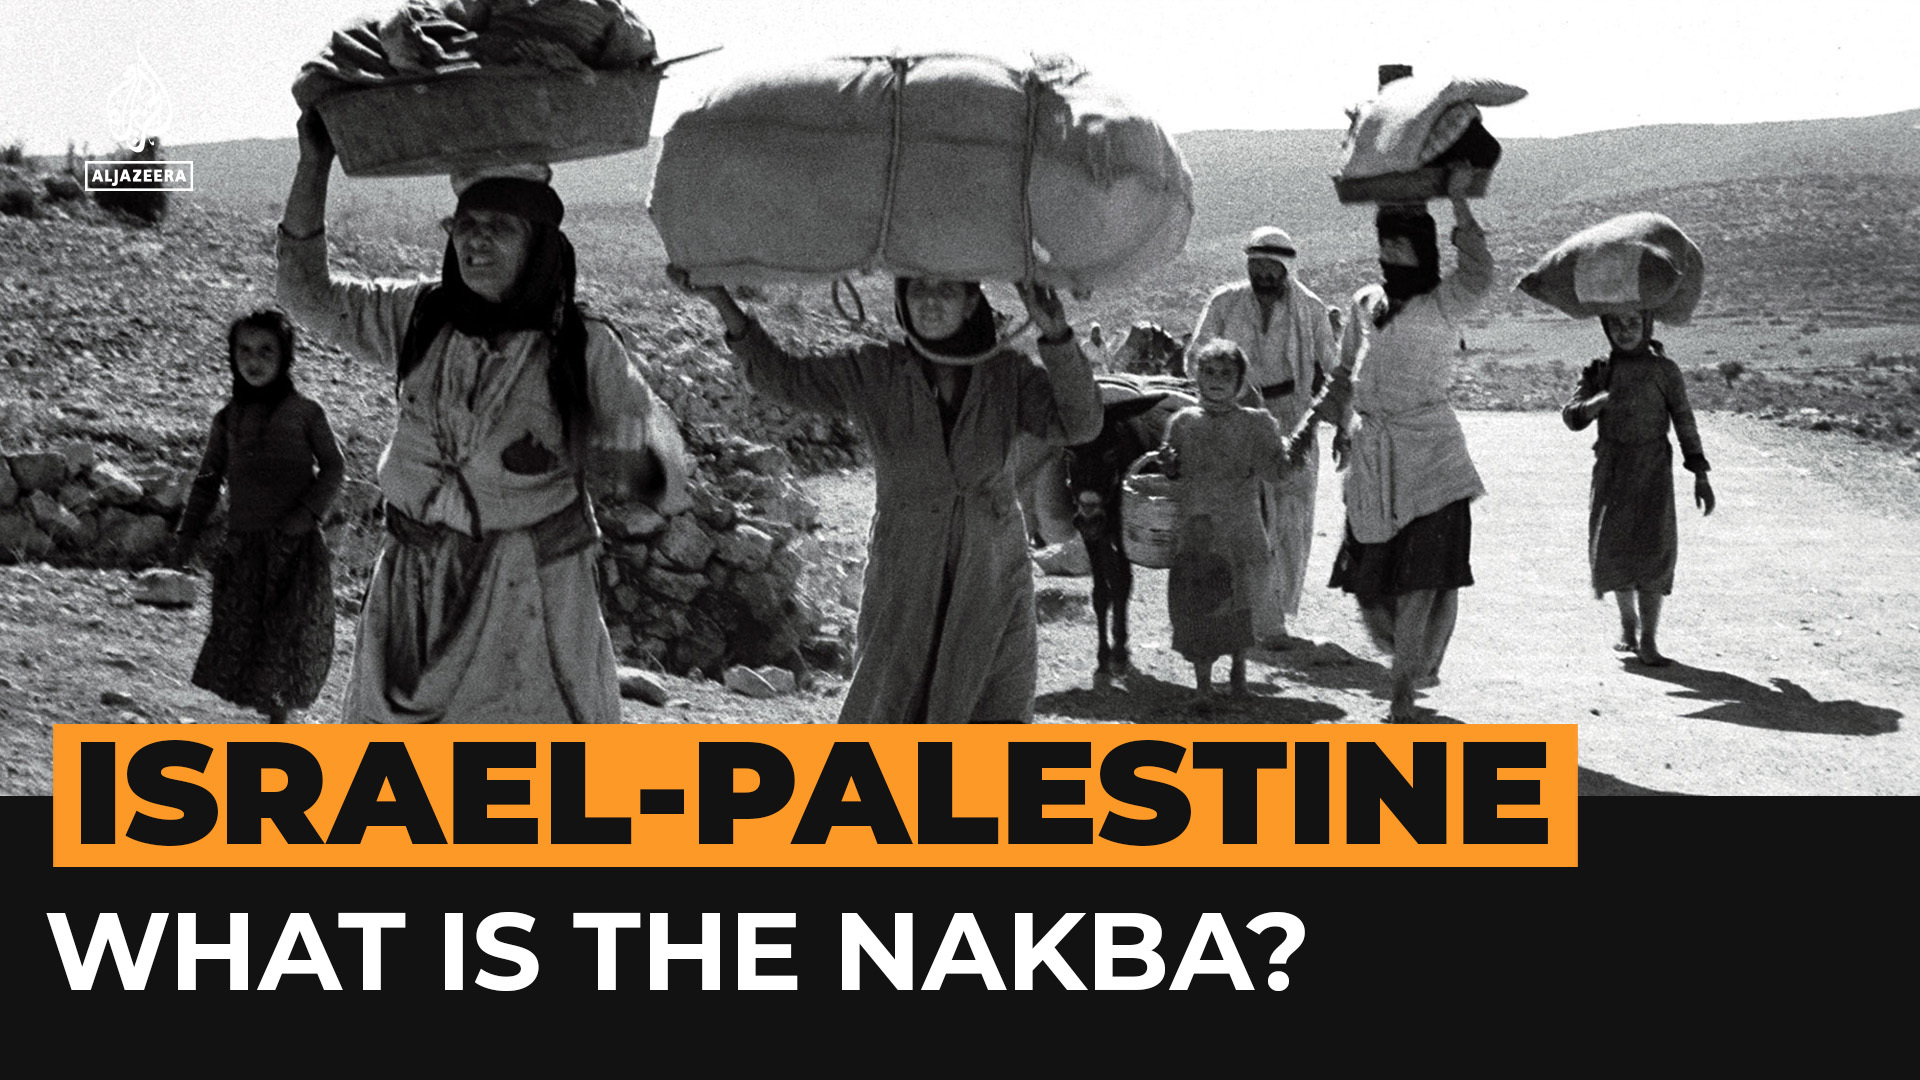 Abbas dari Palestina menyerukan kepada PBB untuk ‘menangguhkan’ Israel sebagaimana ditandai Nakba |  Berita Al-Nakba